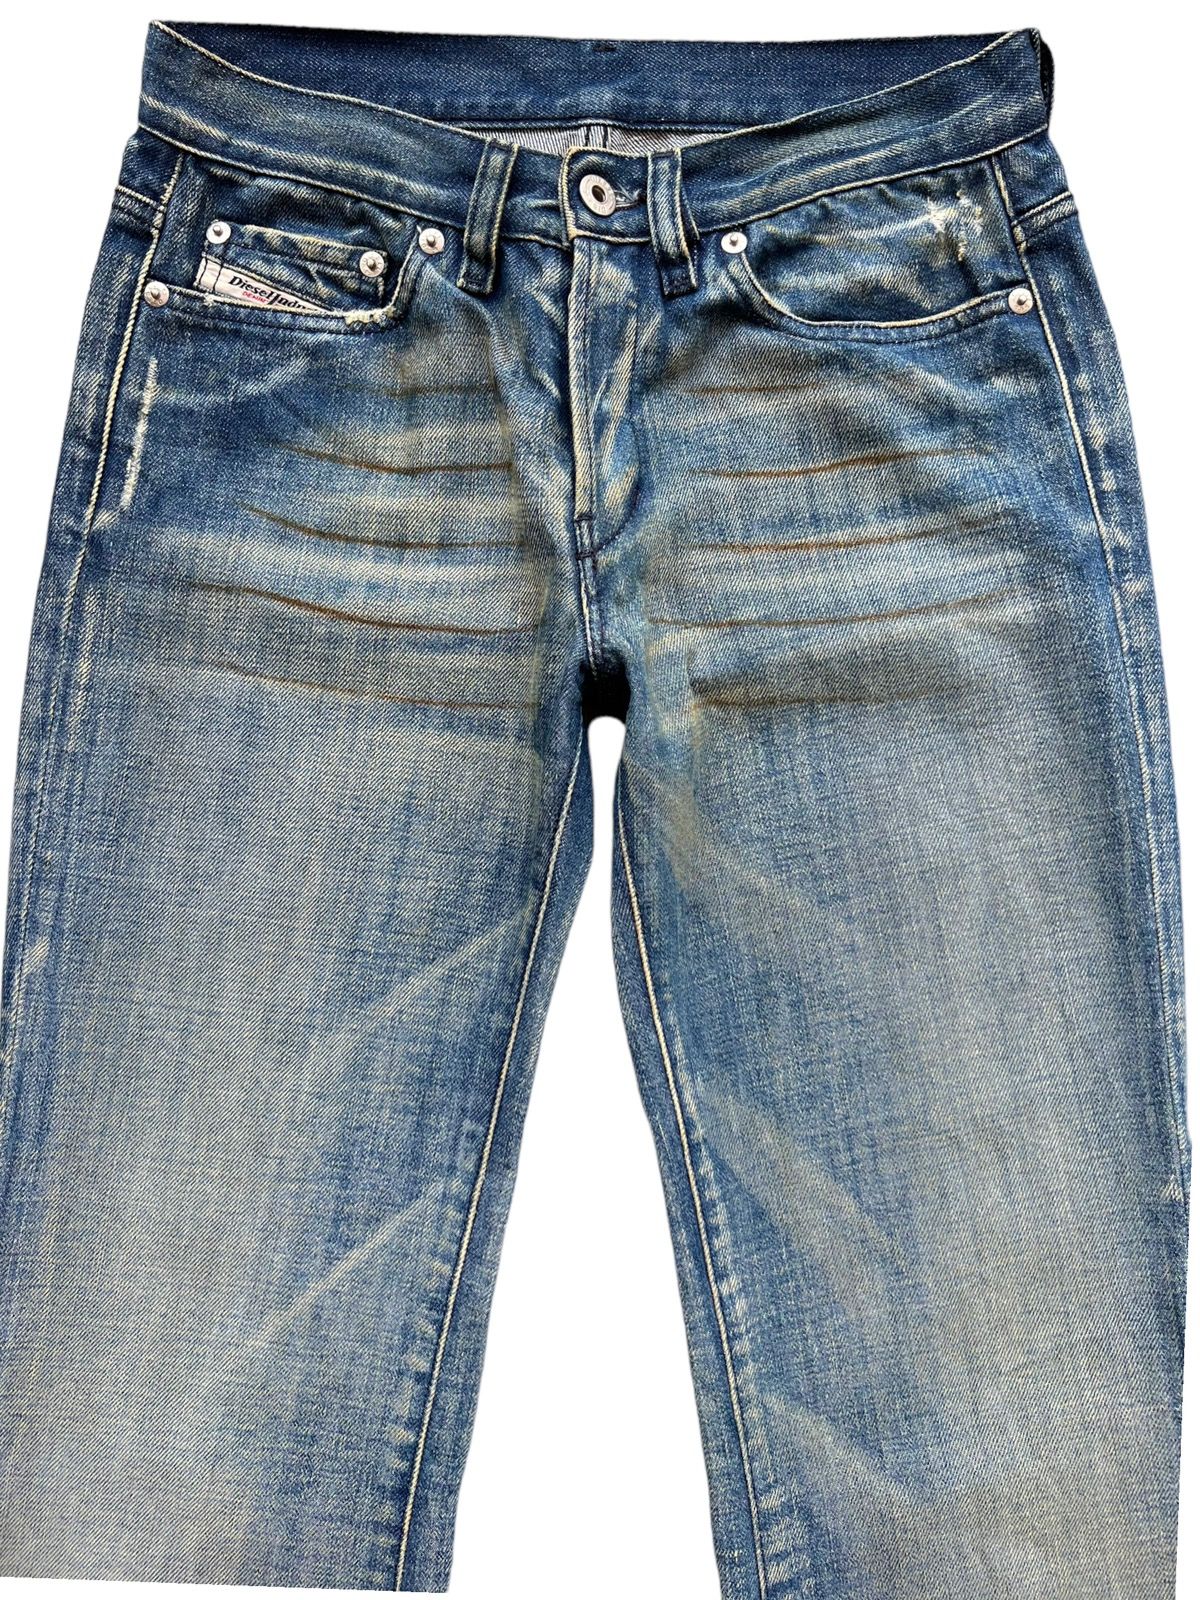 💥💥🔥 Vintage Diesel Rusty Wideleg Flare Denim Jeans 28x32 - 4